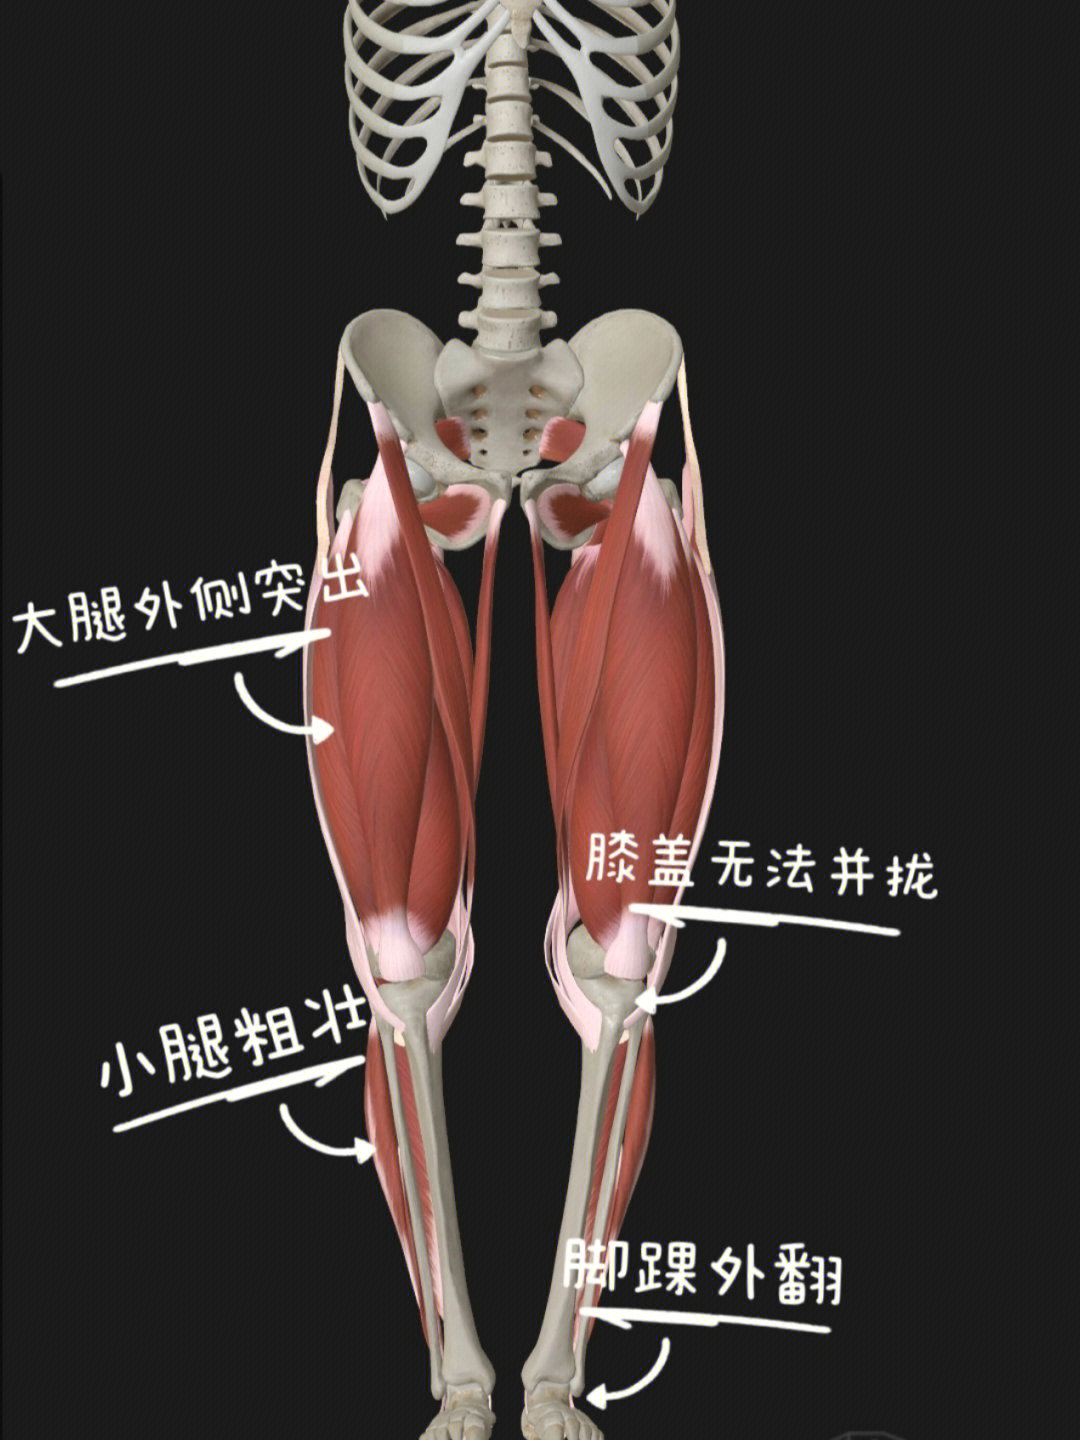 87形成原因:长期缺乏运动导致腿部后侧肌肉无力,长期久坐前侧内侧肌